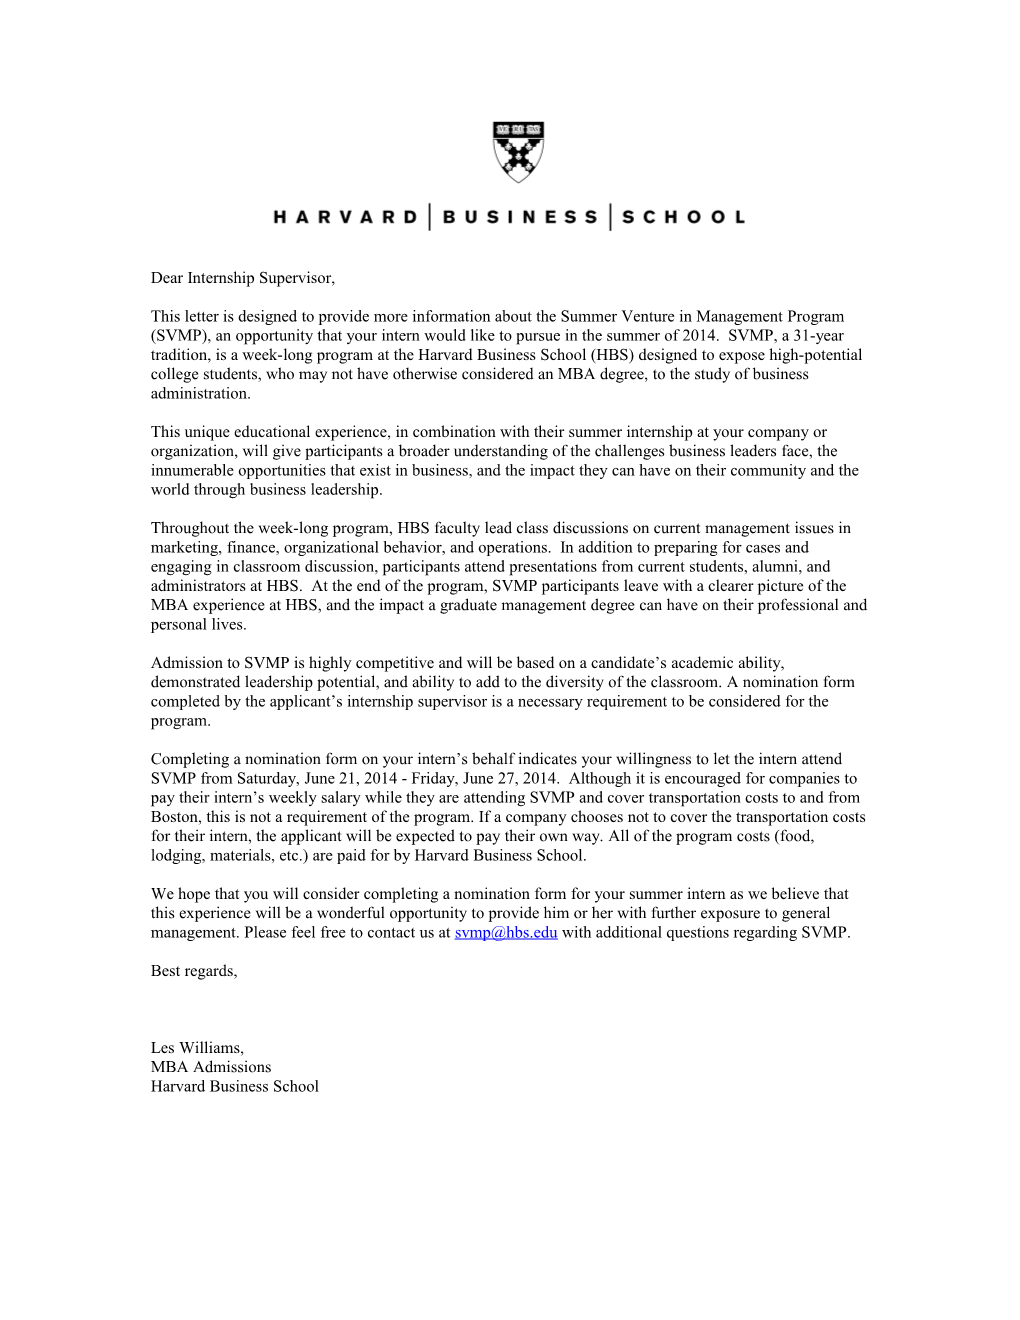 SVMP Sponsorship Letter